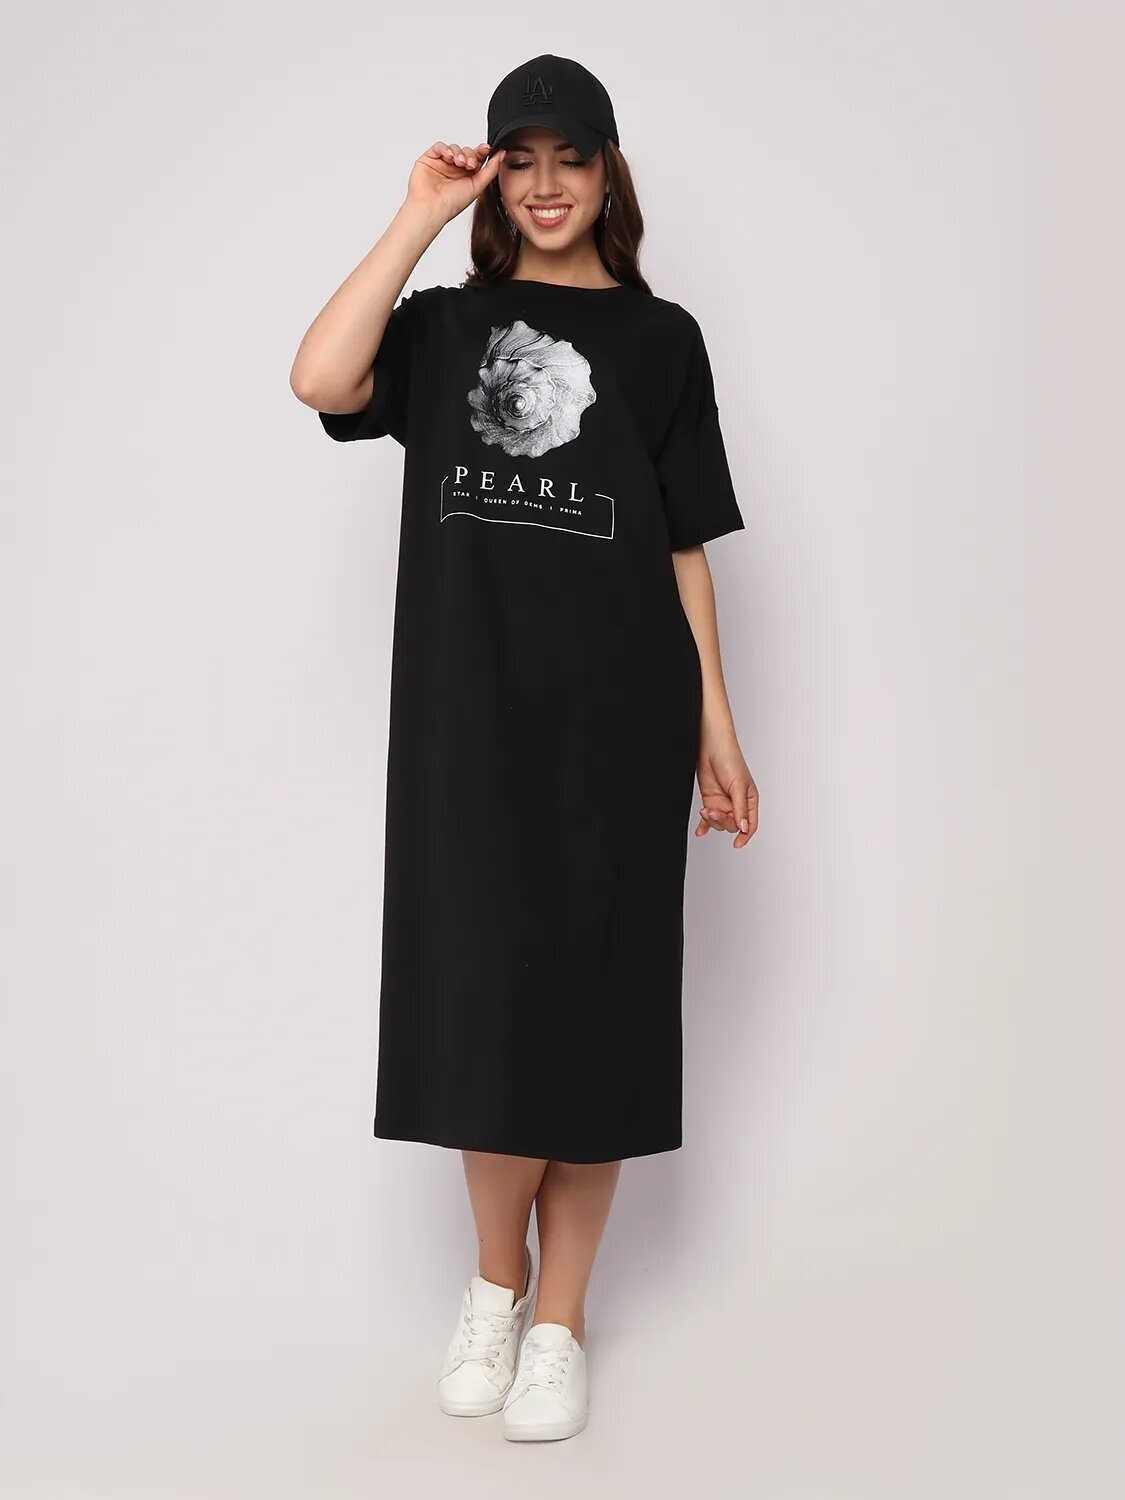 Платье Style Margo, размер 50, черный — купить в интернет-магазине по низкой цене на Яндекс Маркете